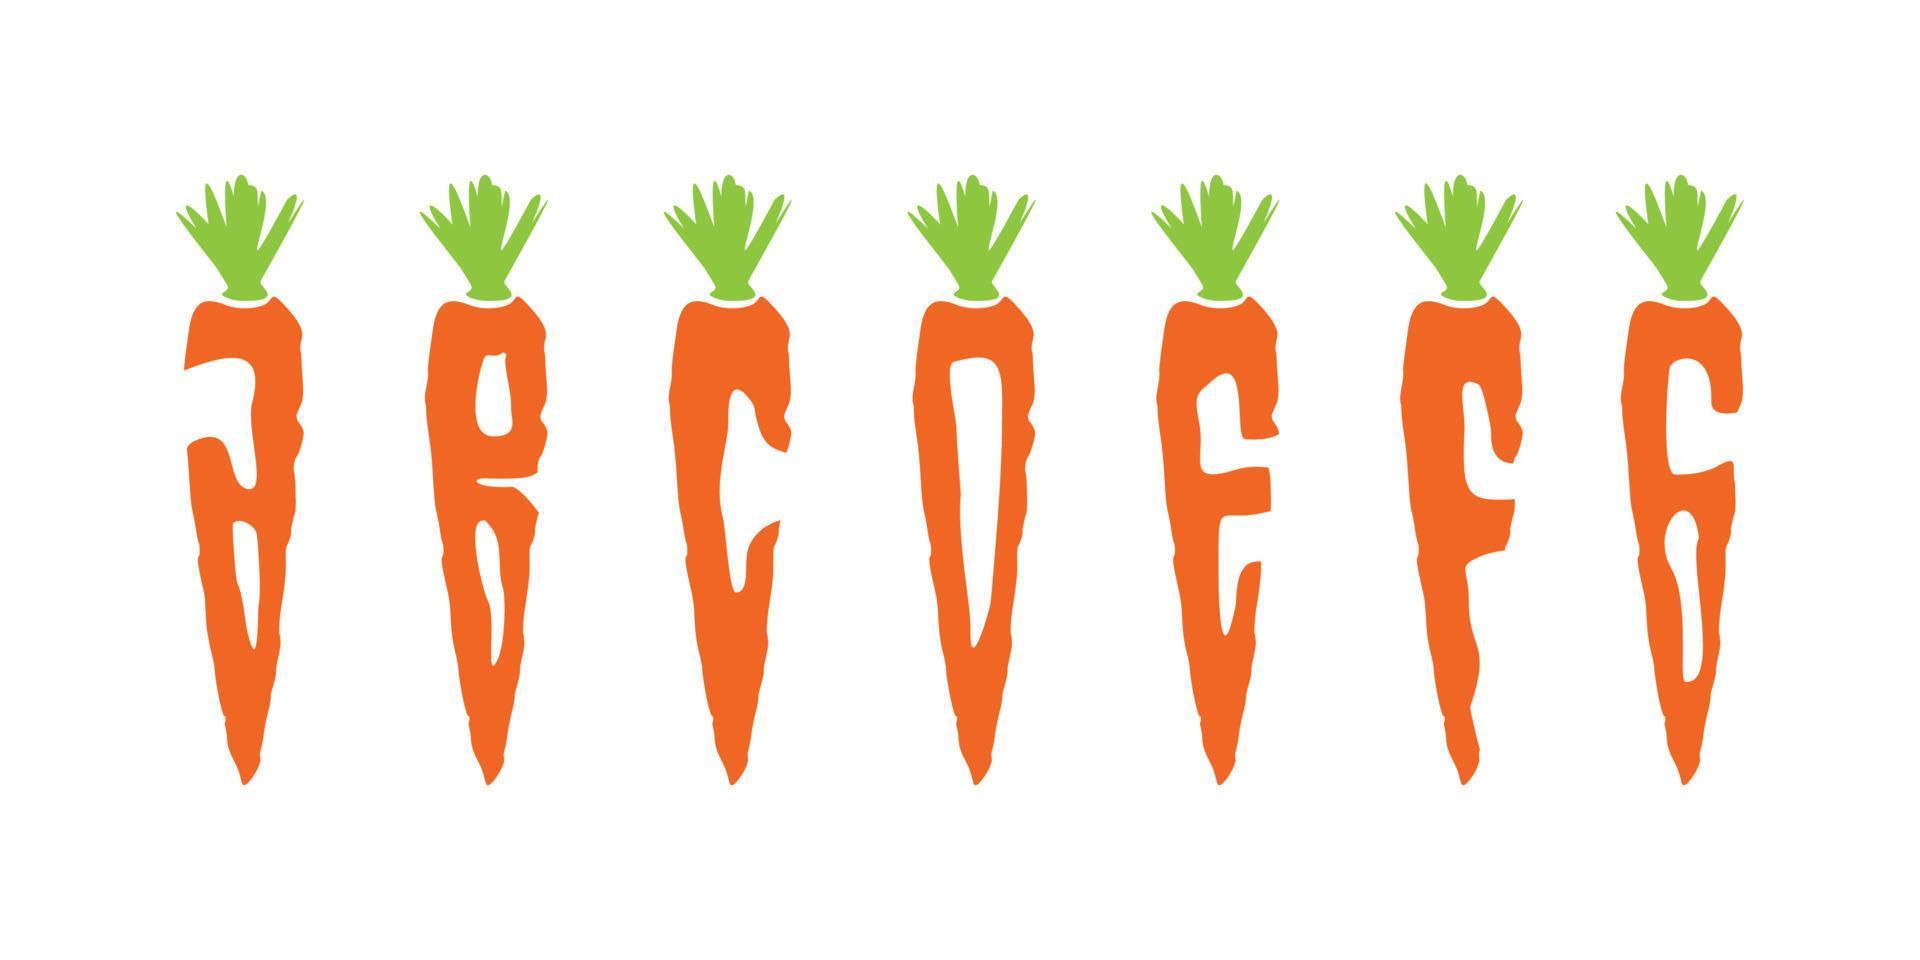 Diseño simple y colorido del ejemplo de la zanahoria de la letra del alfabeto vector